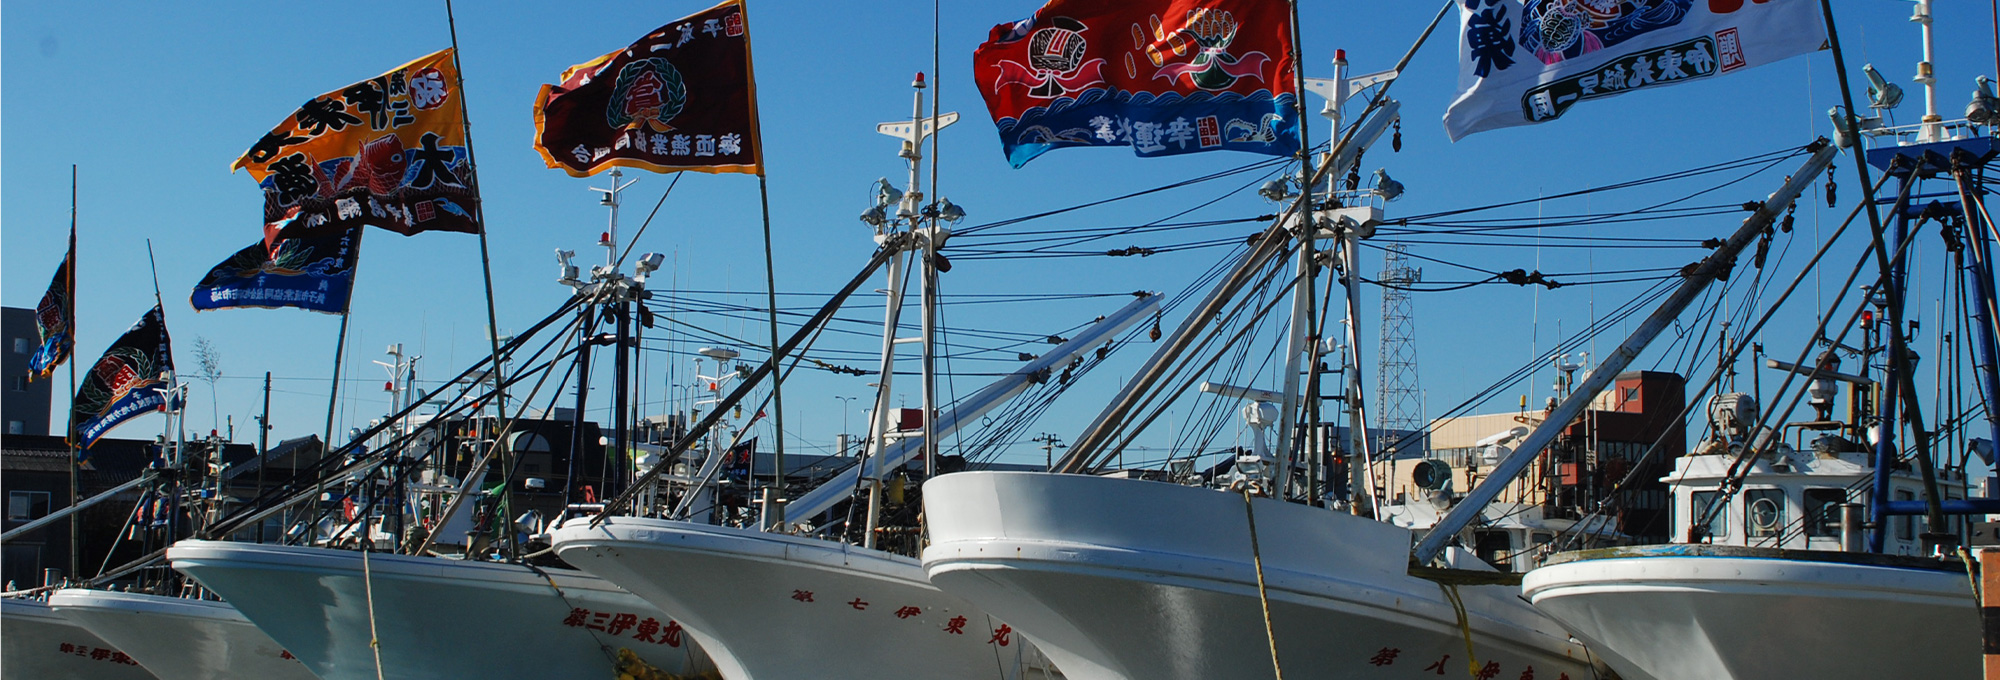 銚子漁港の漁船